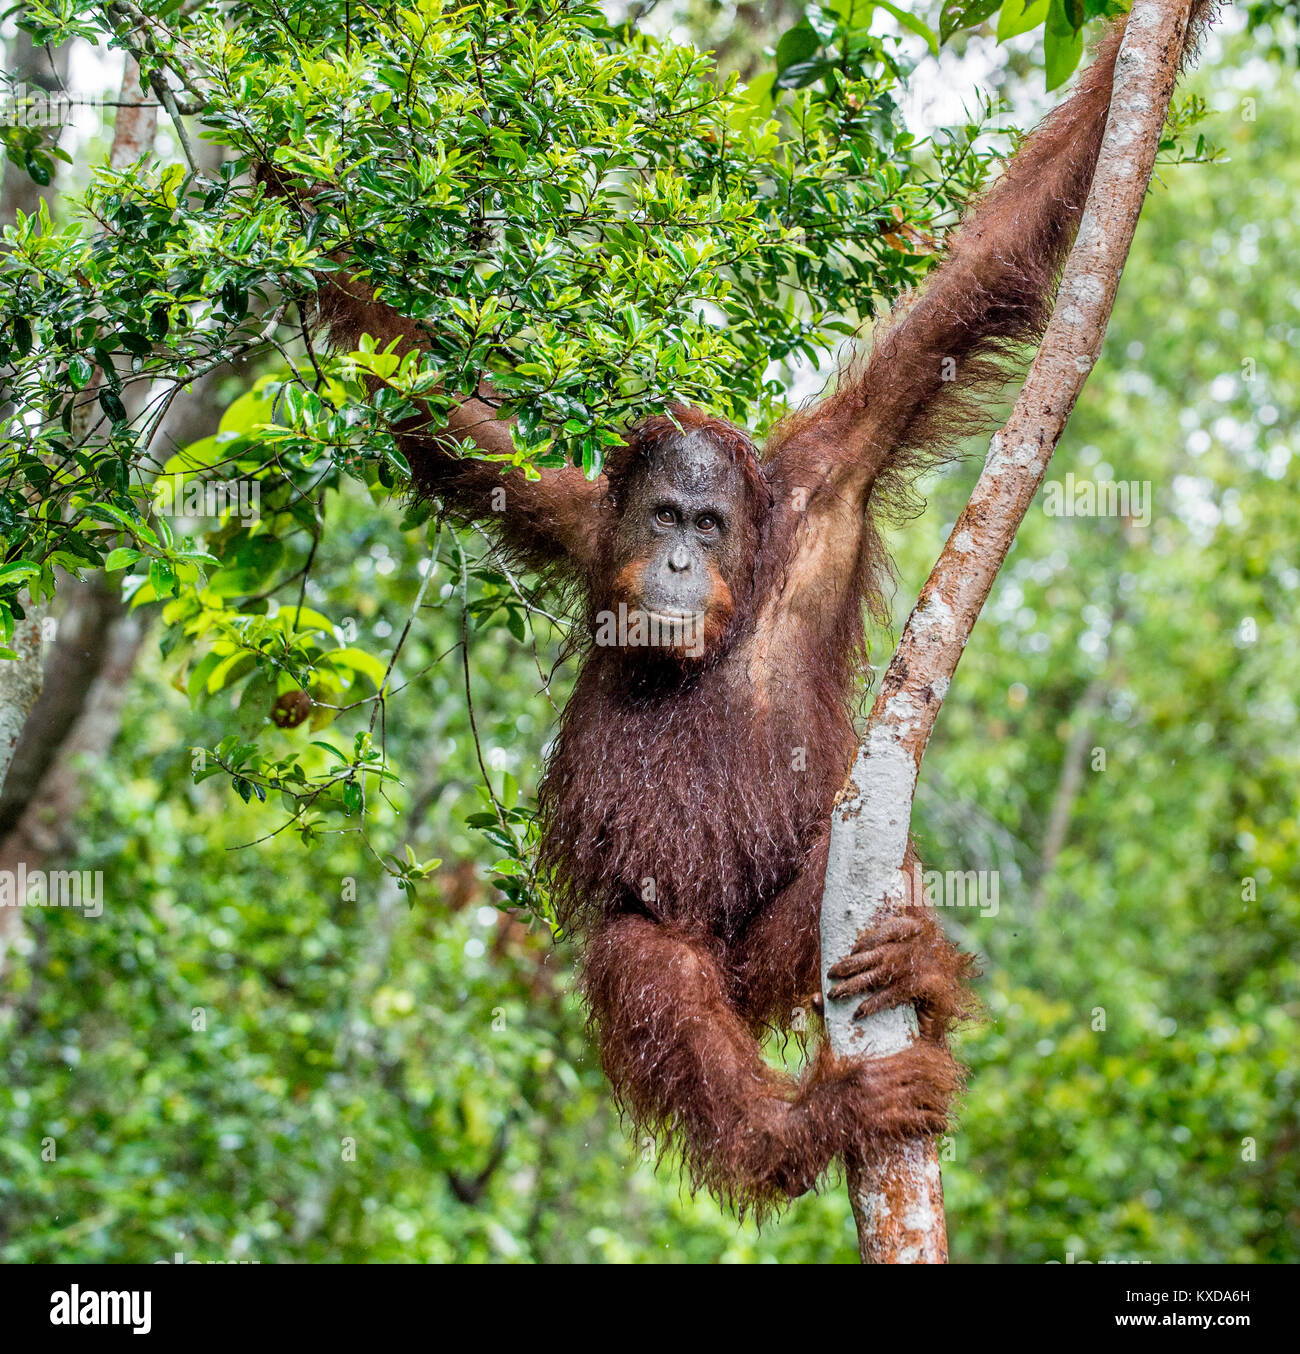 Great Ape auf dem Baum. Zentrale bornesischen Orang-utan (Pongo pygmaeus wurmbii) im natürlichen Lebensraum. Wilde Natur im tropischen Regenwald von Borneo. Stockfoto